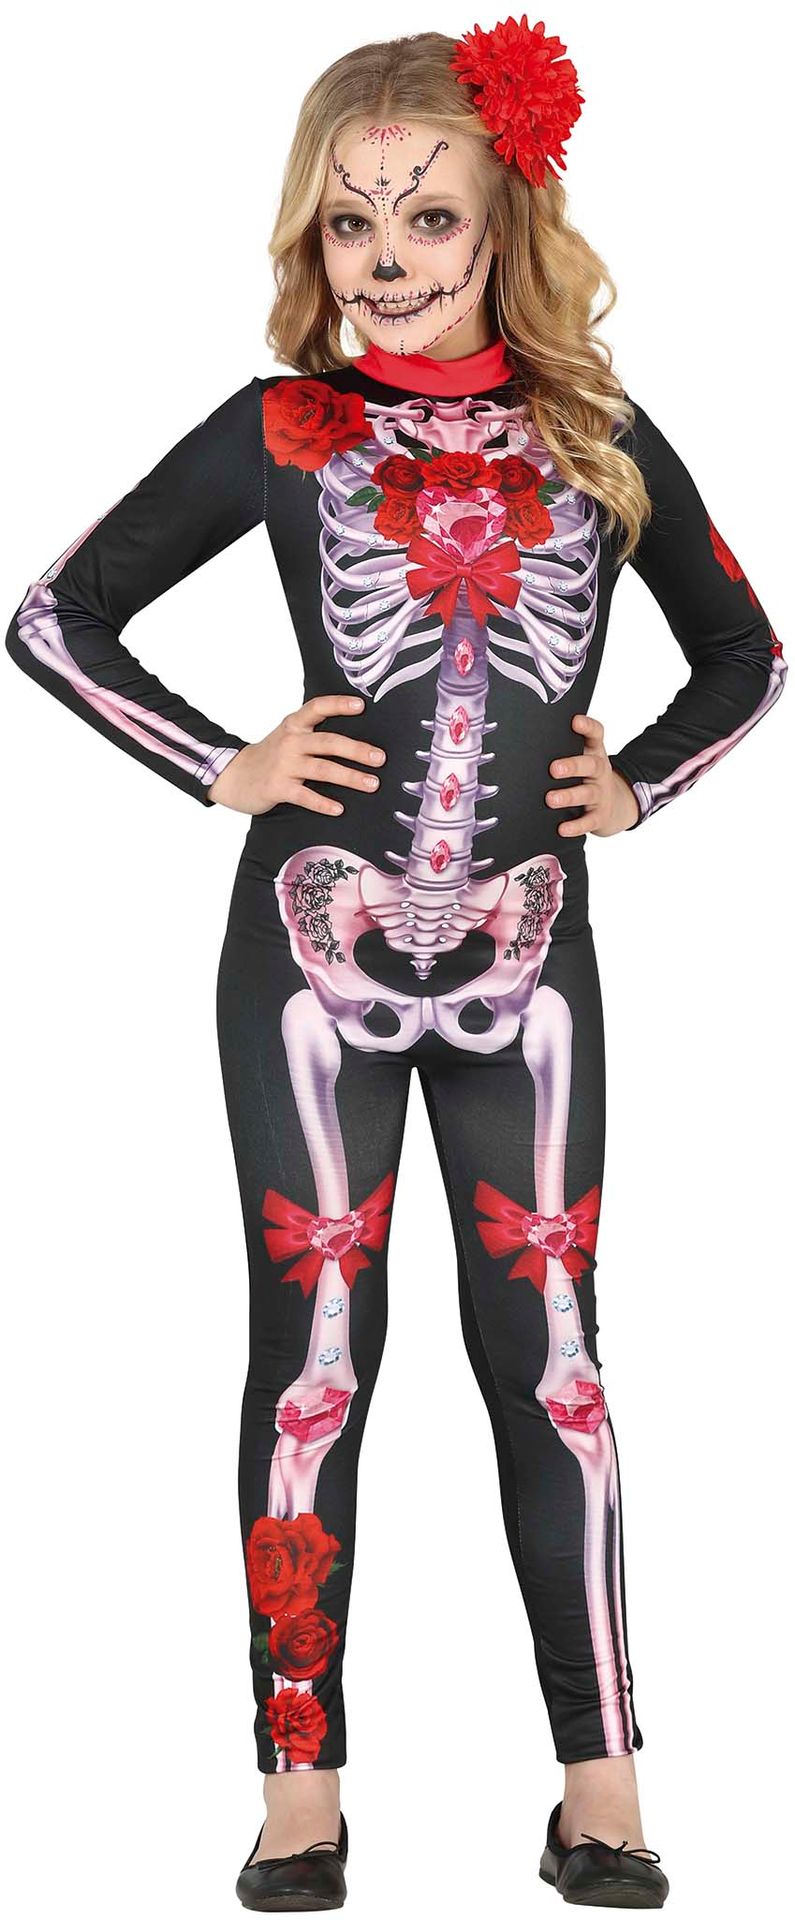 Skelet met bloemen jumpsuit outfit meisjes